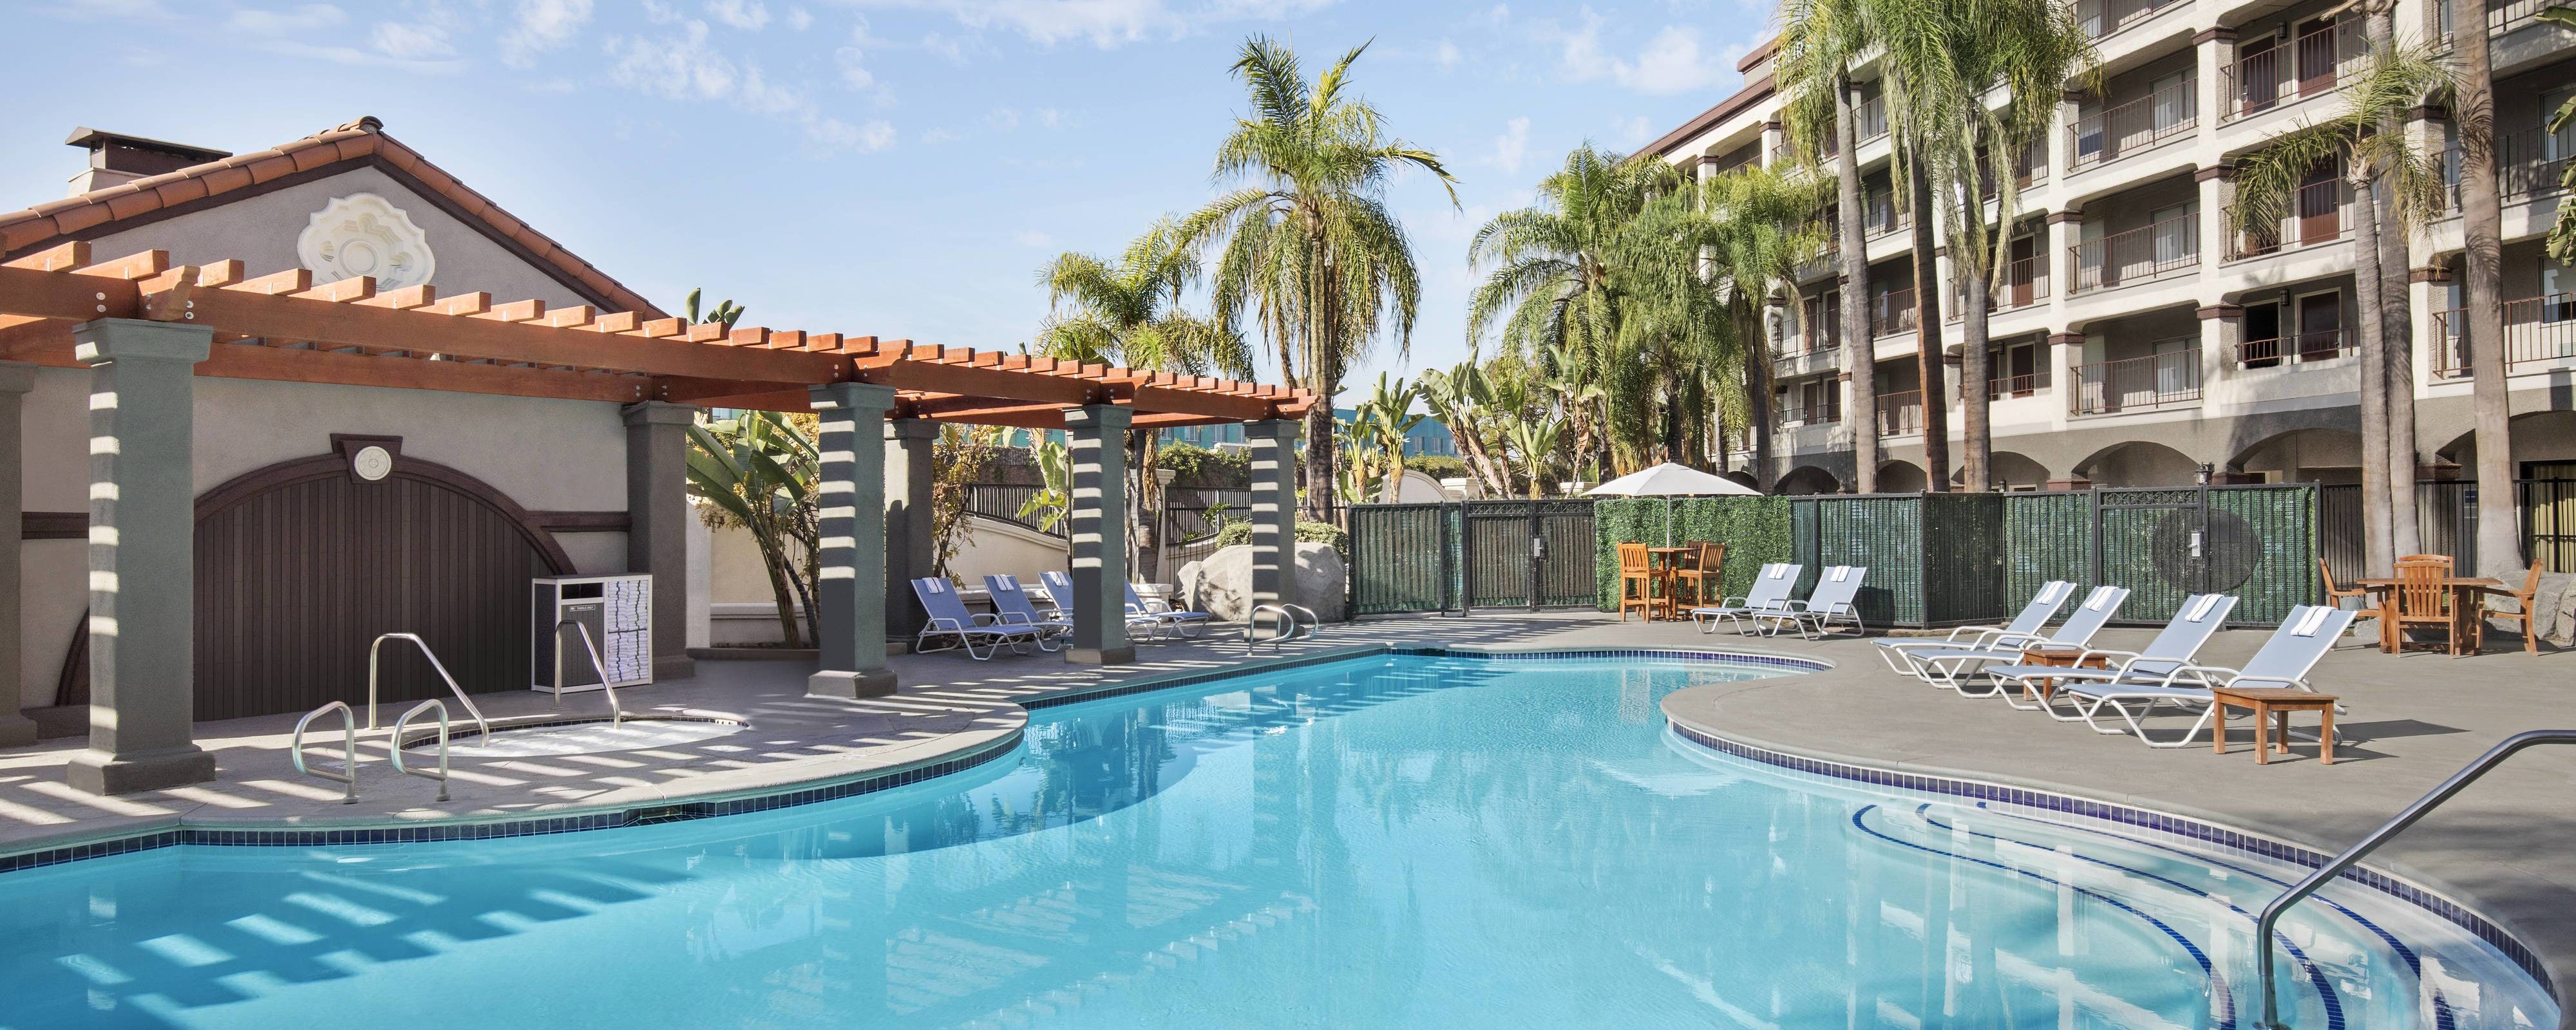 Anaheim Hotels near Disneyland with Pool | Four Points by Sheraton Anaheim